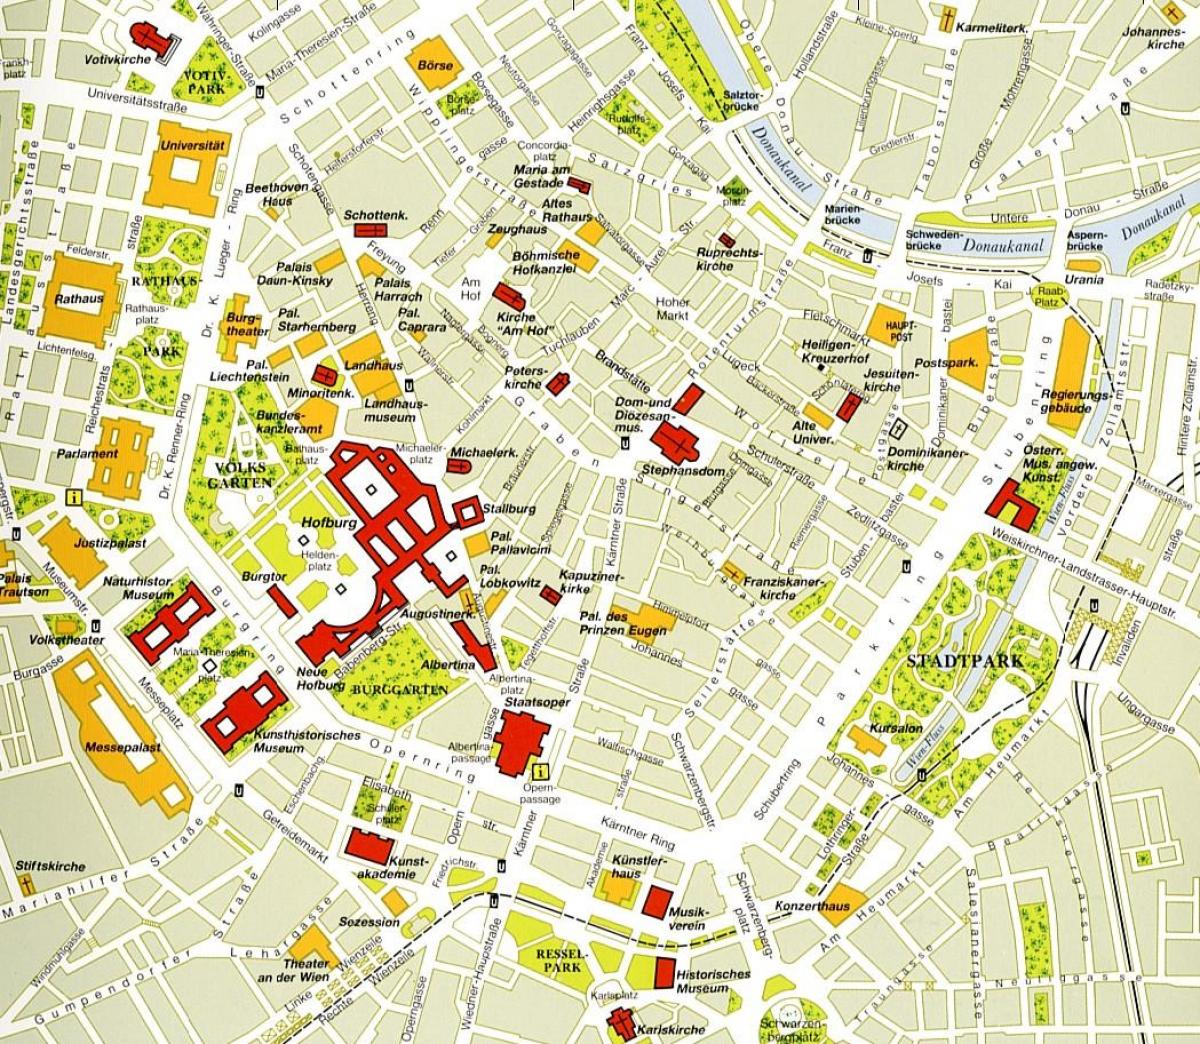 Vienna center hartă